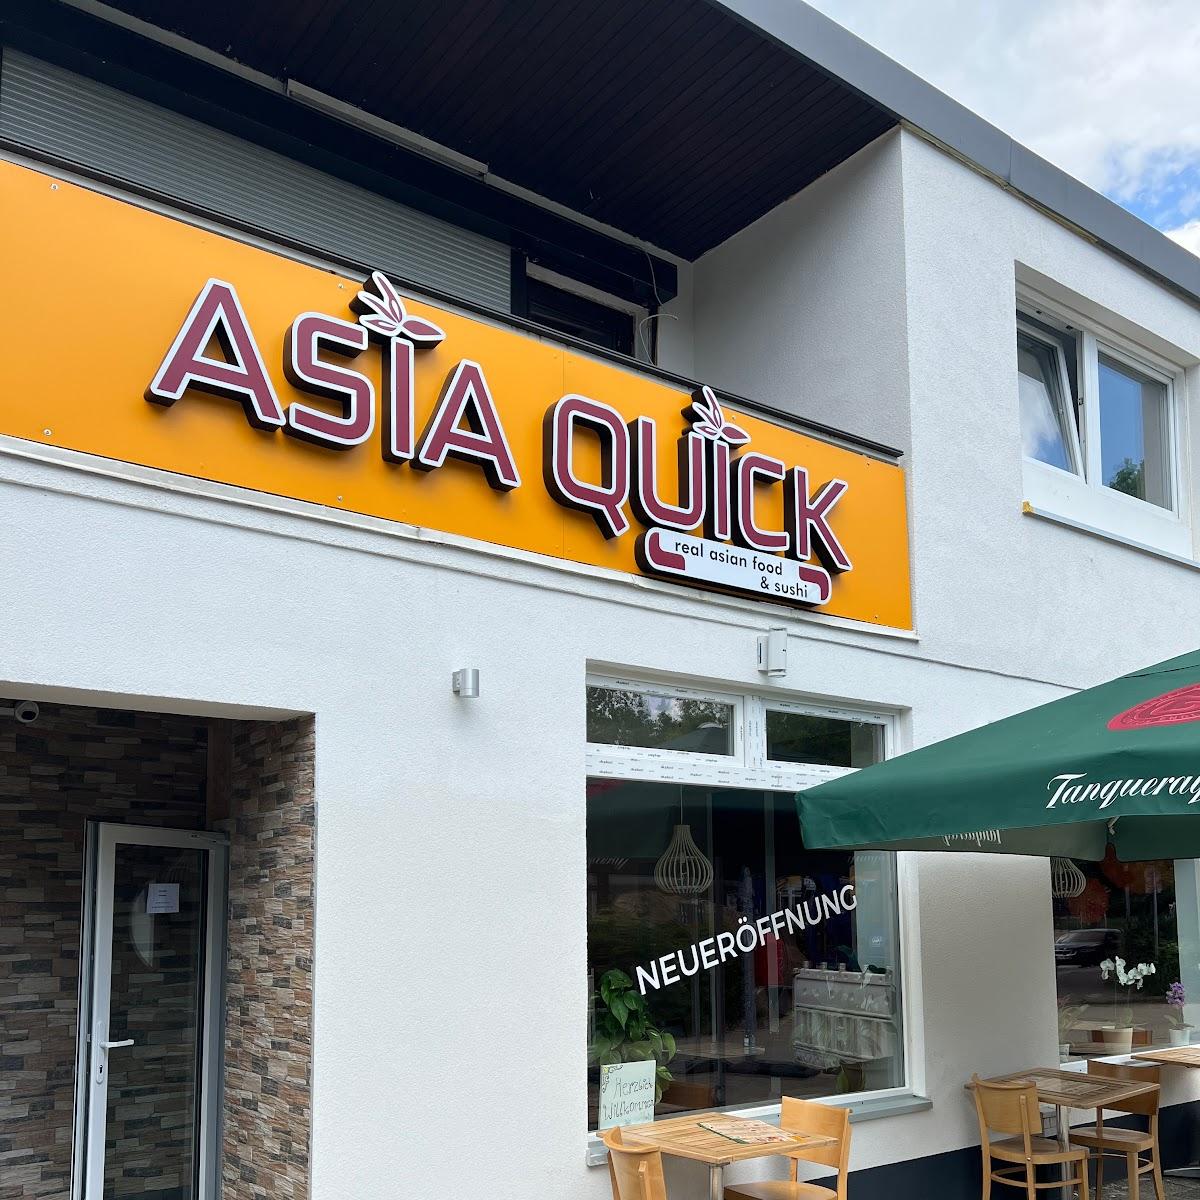 Restaurant "Asia Quick" in Hamburg